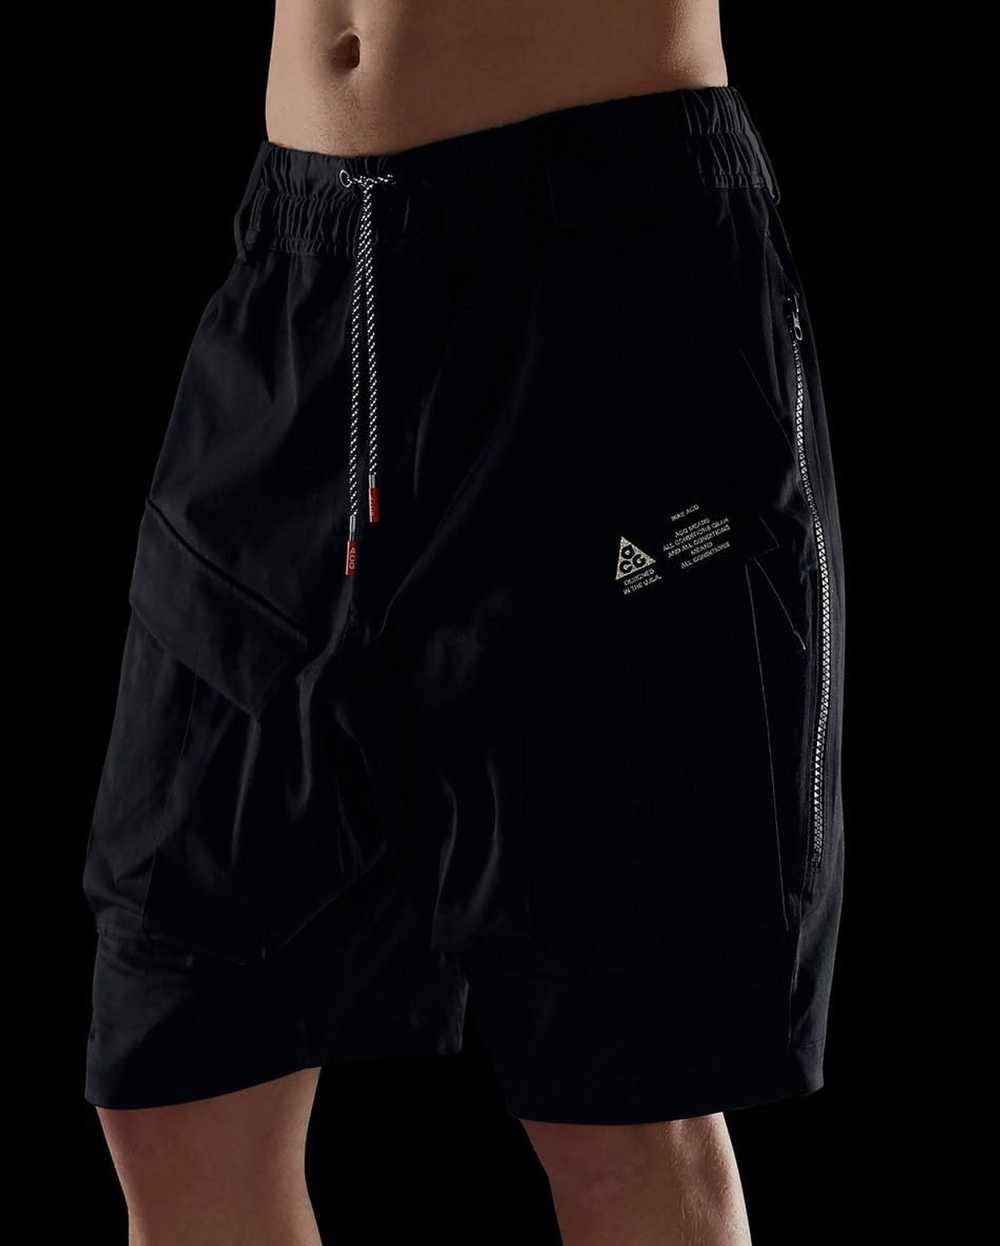 Nike ACG Nikelab acg cargo shorts 32 -34 - image 1